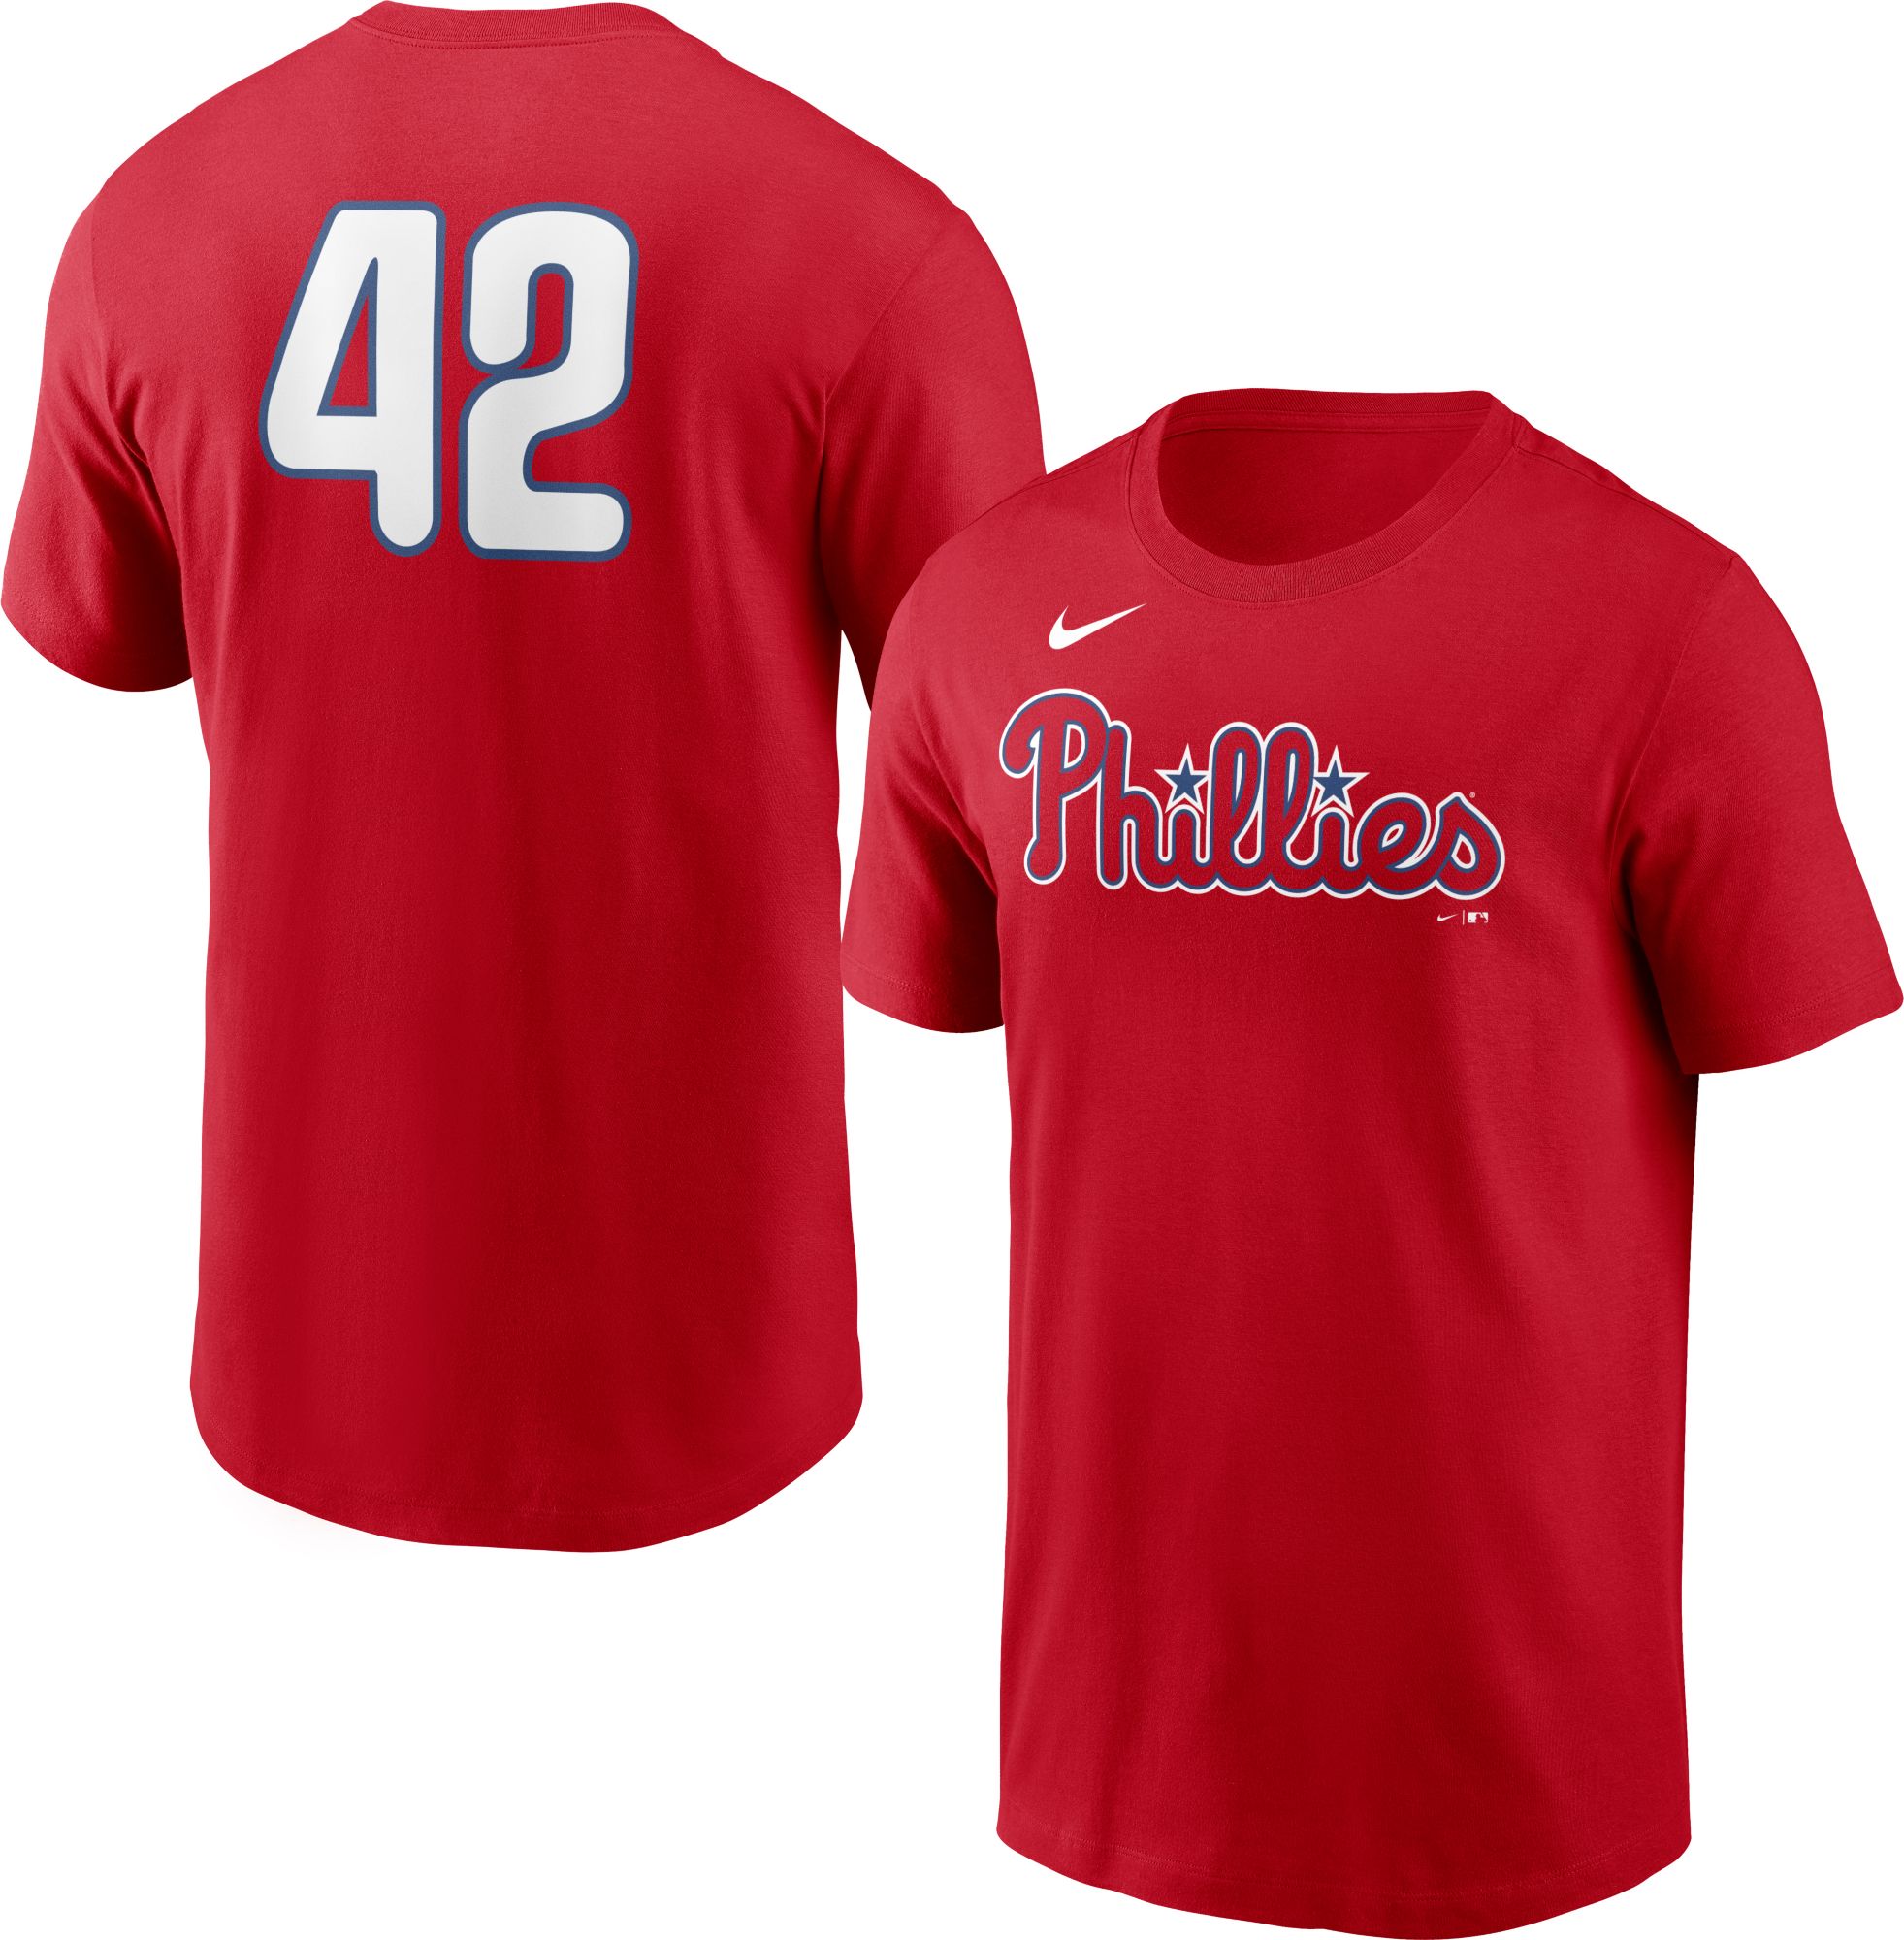 Men's Philadelphia Phillies Red Team 42 T-Shirt